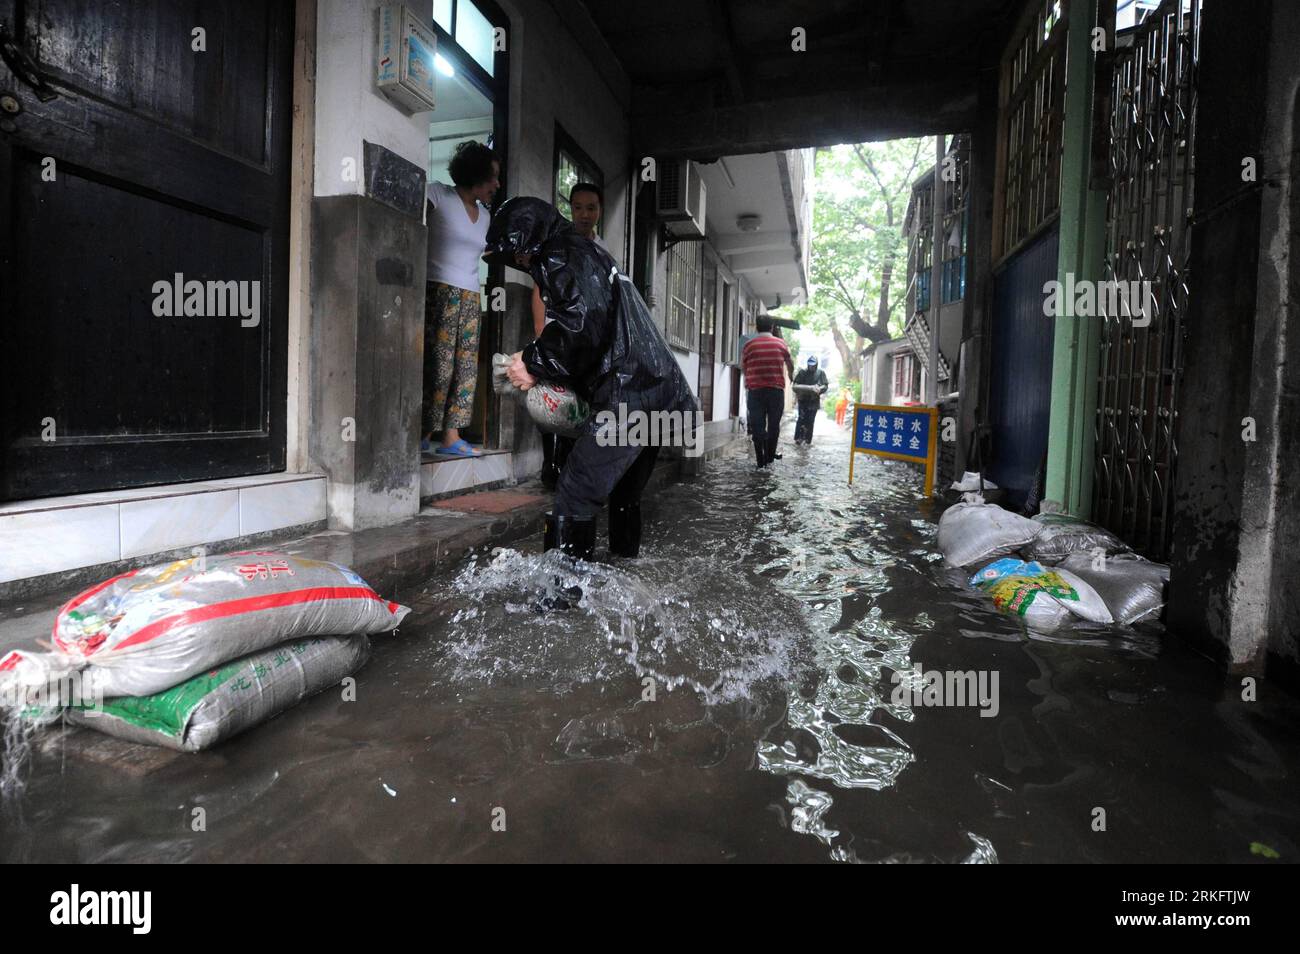 Bildnummer: 55455453 Datum: 14.06.2011 Copyright: imago/Xinhua (110614) -- HANGZHOU, 14. Juni 2011 (Xinhua) -- Gemeindearbeiter helfen den Bewohnern, Sandsäcke zu stapeln, um den Wassereinschlag in Hangzhou, der Hauptstadt der ostchinesischen Provinz Zhejiang, am 14. Juni 2011 zu verhindern. Die erste gelbe Regenwarnung wird hier am Dienstag in Erwartung eines Regens ausgegeben, der 50 mm oder die meisten 70-100 mm Niederschlag innerhalb von 24 Stunden bringt. (Xinhua/Xu Yu) (lfj) CHINA-HANGZHOU-YELLOW RAINSTROM WARNING (CN) PUBLICATIONxNOTxINxCHN Gesellschaft Wetter Regen xcb x0x 2011 quer Bildnummer 55455453 Datum 14 06 2011 Copyright Imago XI Stockfoto